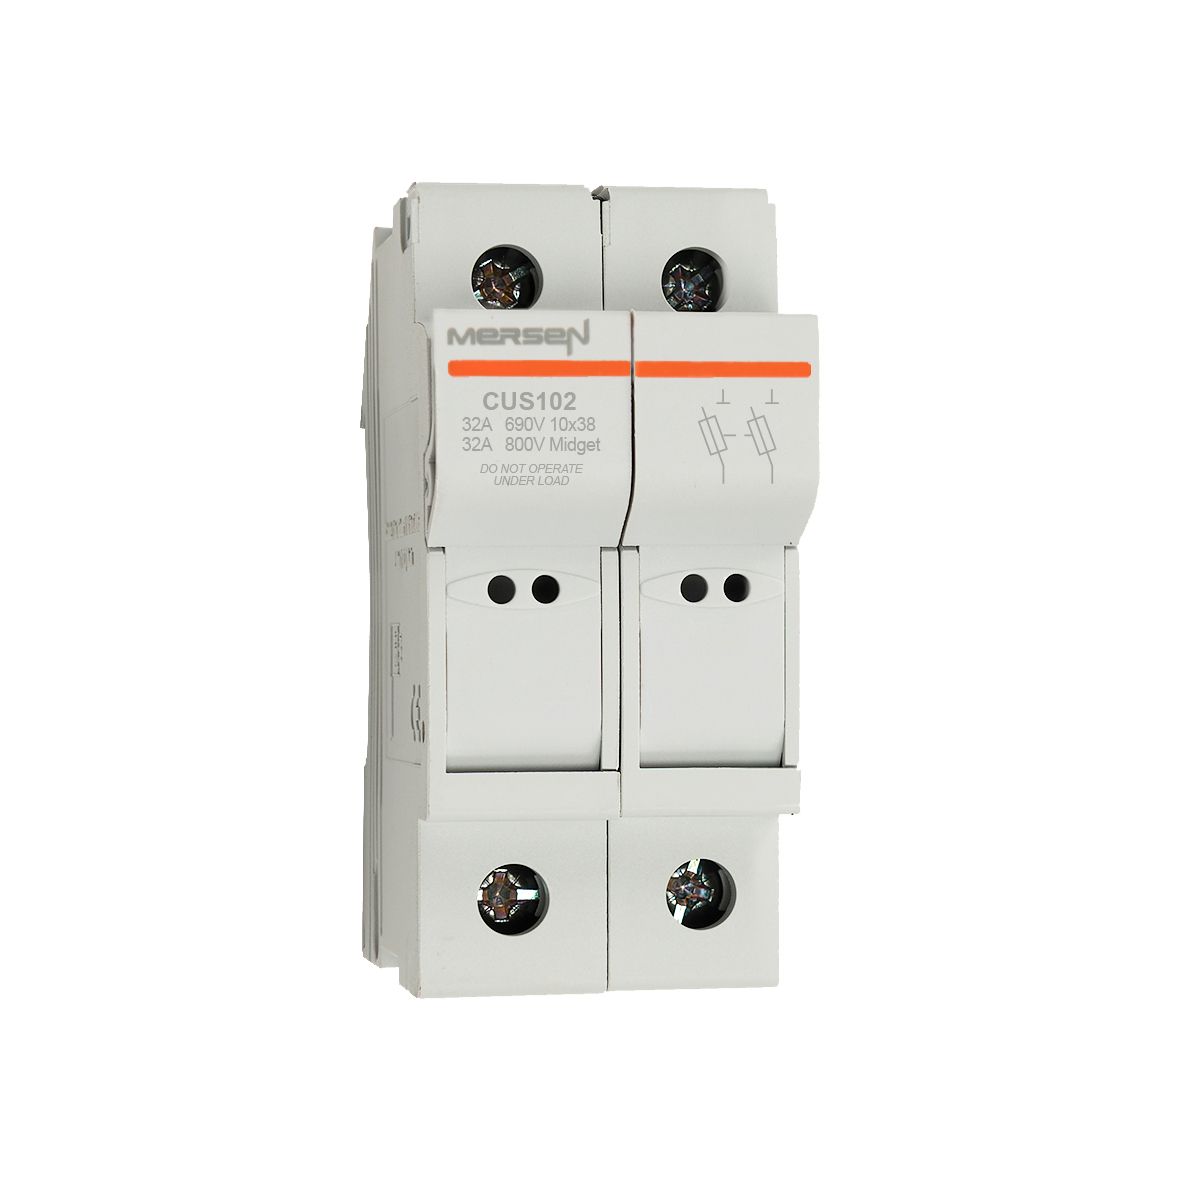 D1062718 - modular fuse holder, UL+IEC, 2P, 10x38, MIDGET, DIN rail mounting, IP20